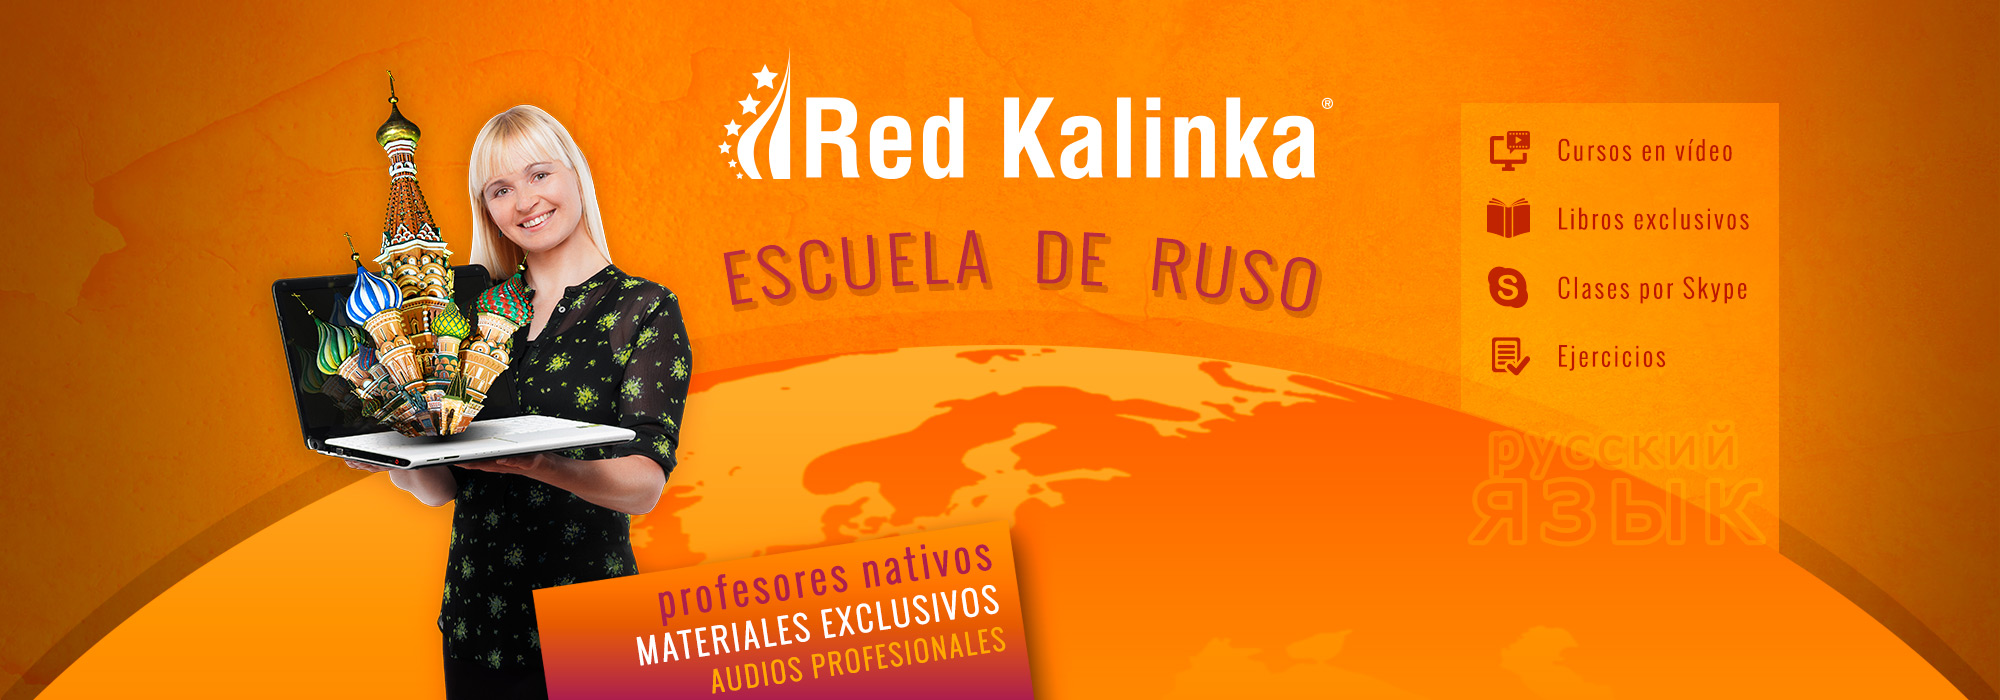 Red Kalinka: escuela de ruso